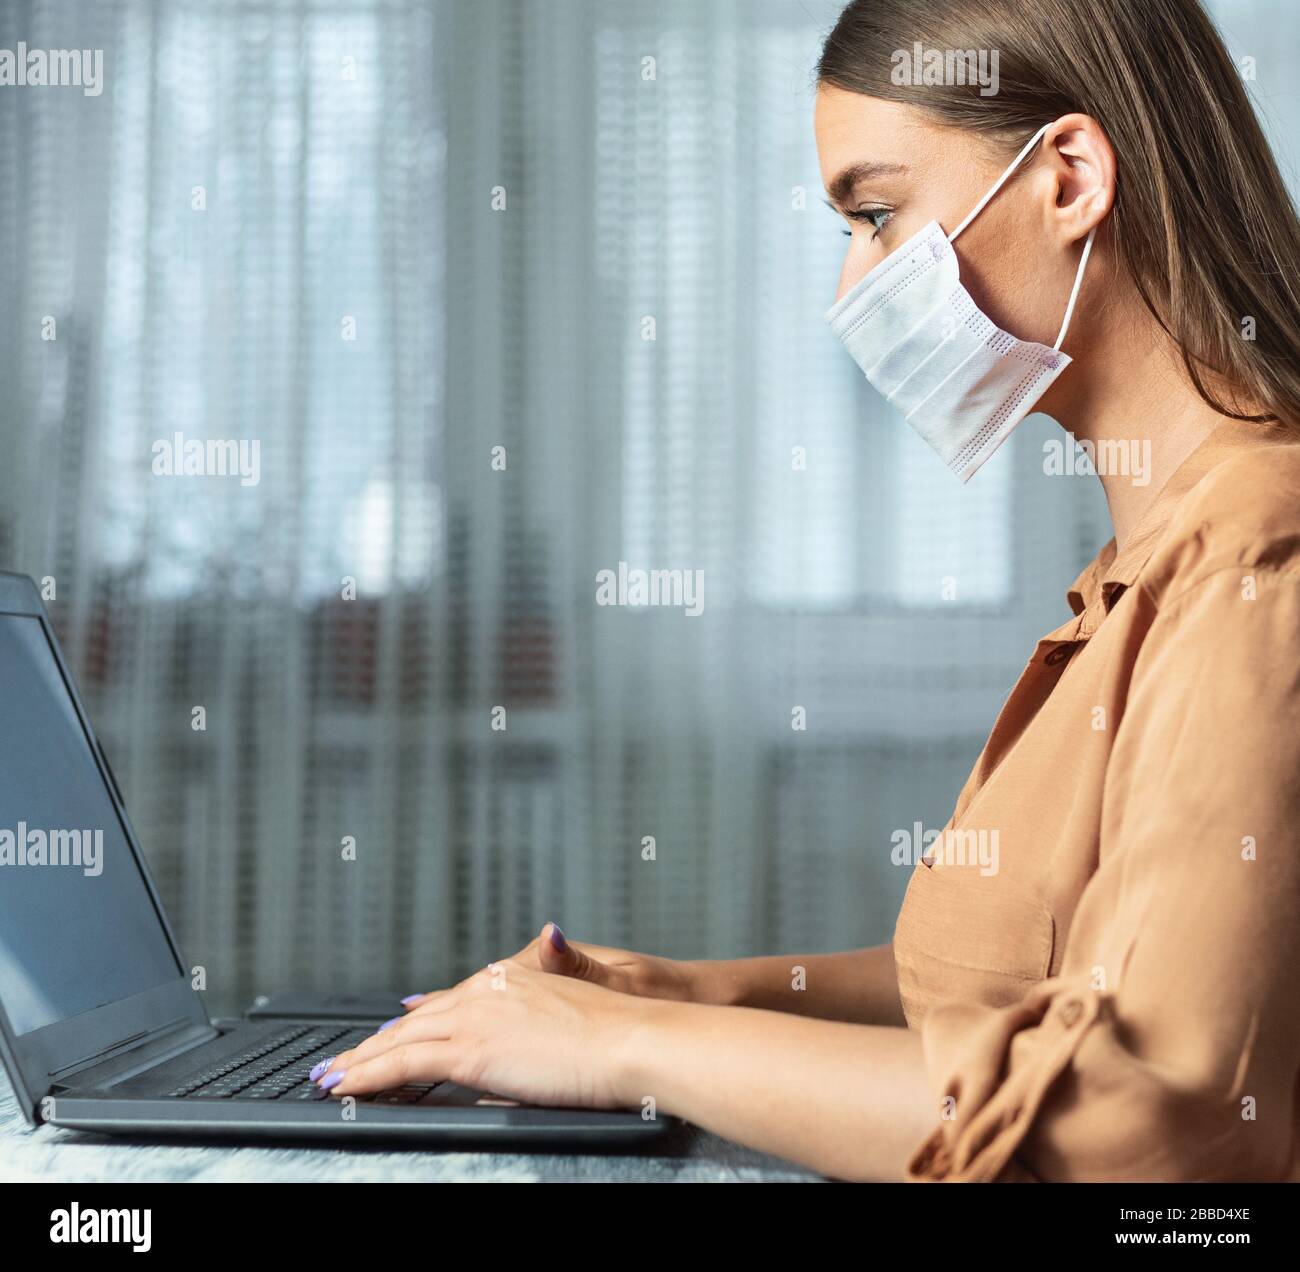 Femme portant un masque facial et travaillant sur un ordinateur portable, gros plan Banque D'Images